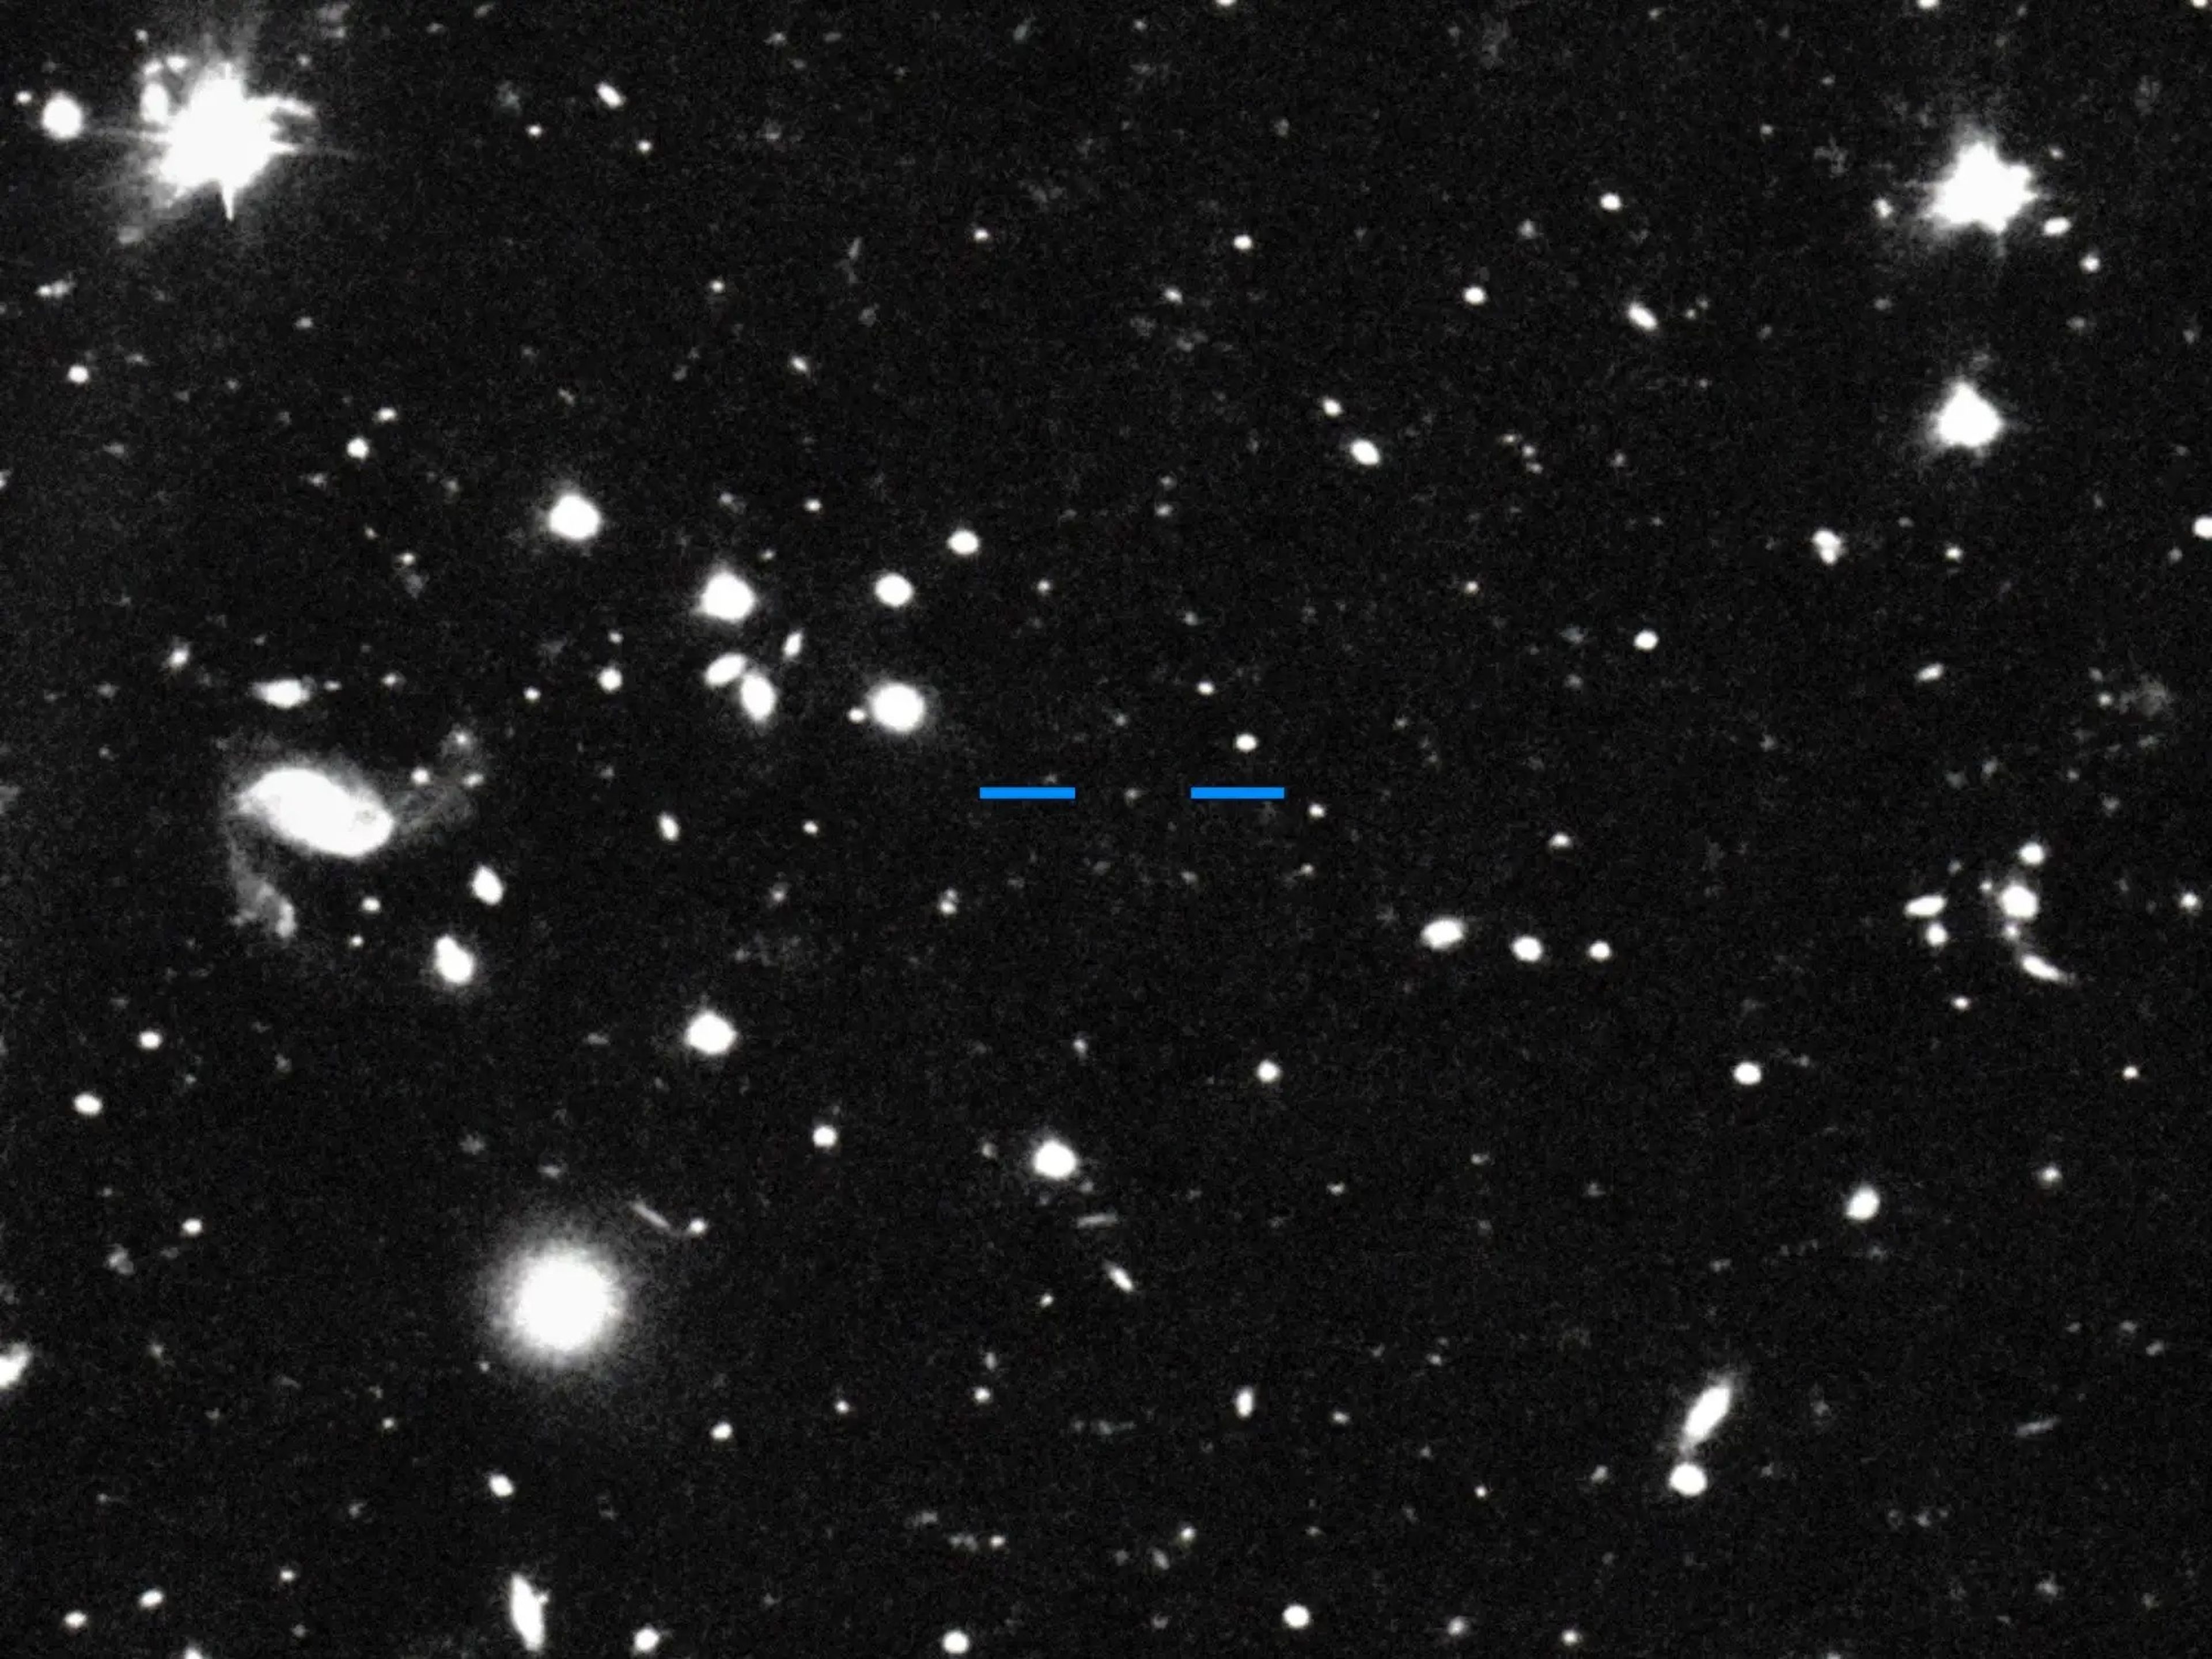 Esta imagen de Farfarout (identificada con marcadores azules) fue tomada con el Telescopio Subaru el 15 de enero de 2018.